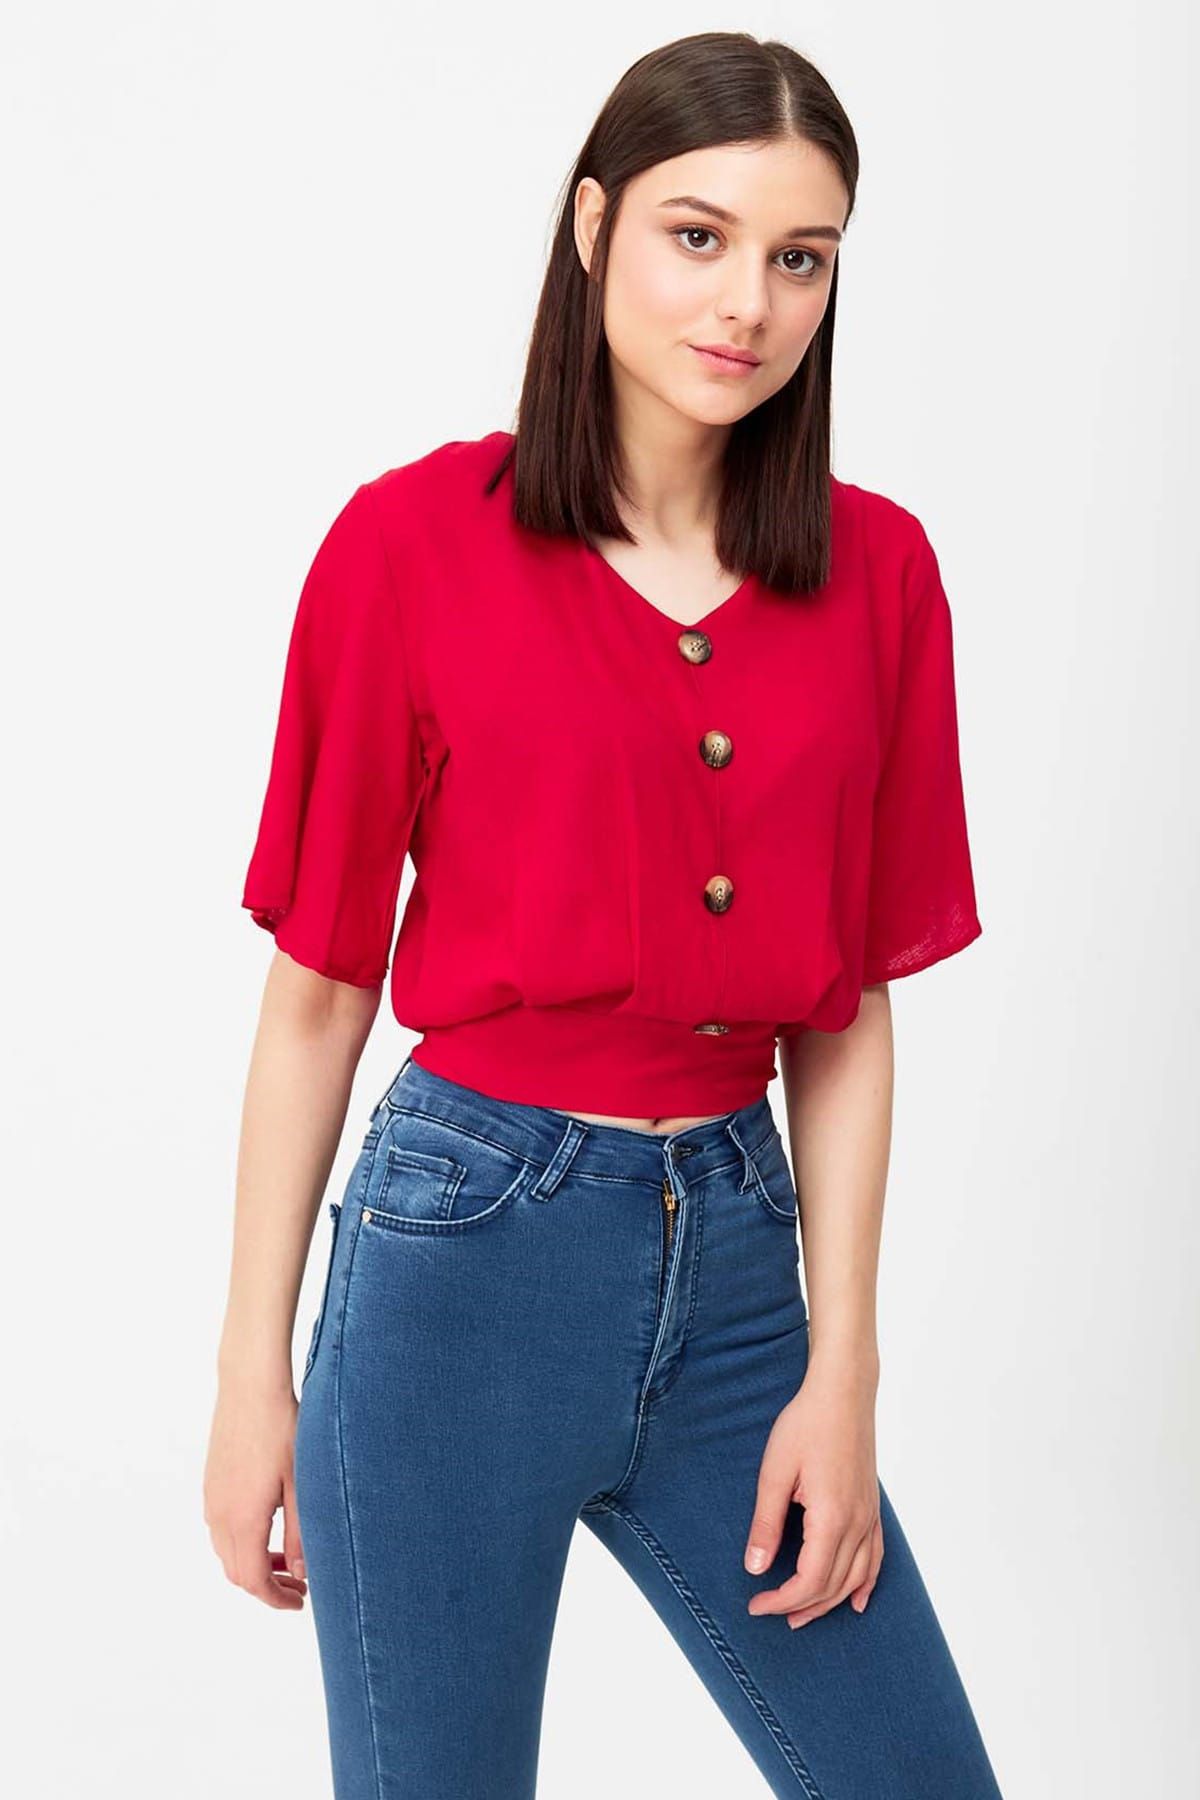 MISOCIAL Kadın Kırmızı Arkadan Bağlamalı Düğme Detaylı Bluz 19Y002301